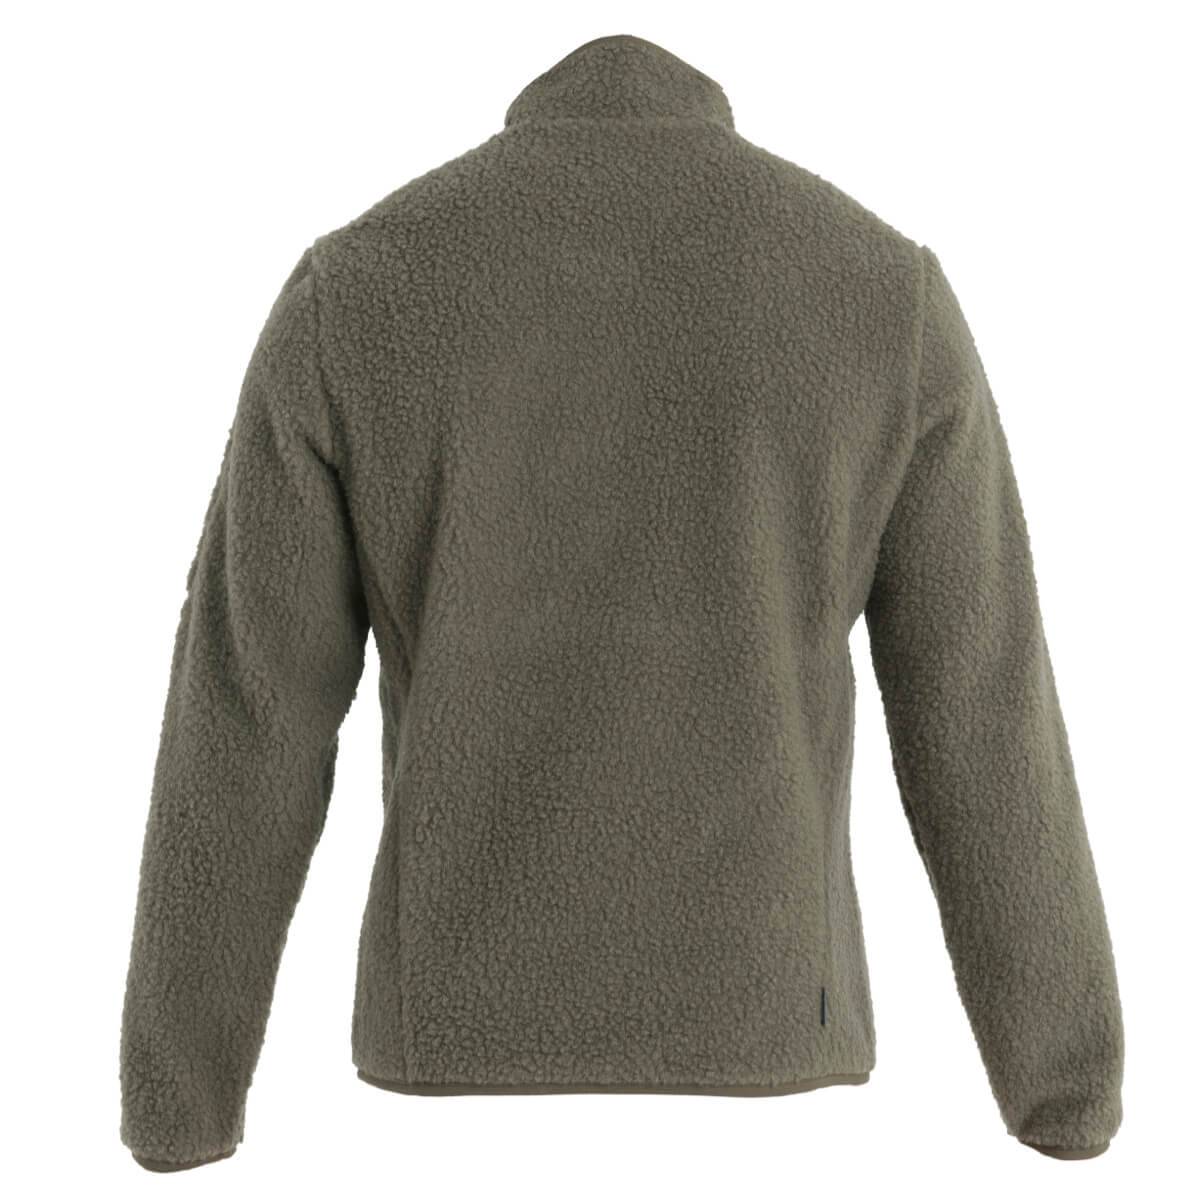 Merino Wool Fleece Clothing: Realfleece®